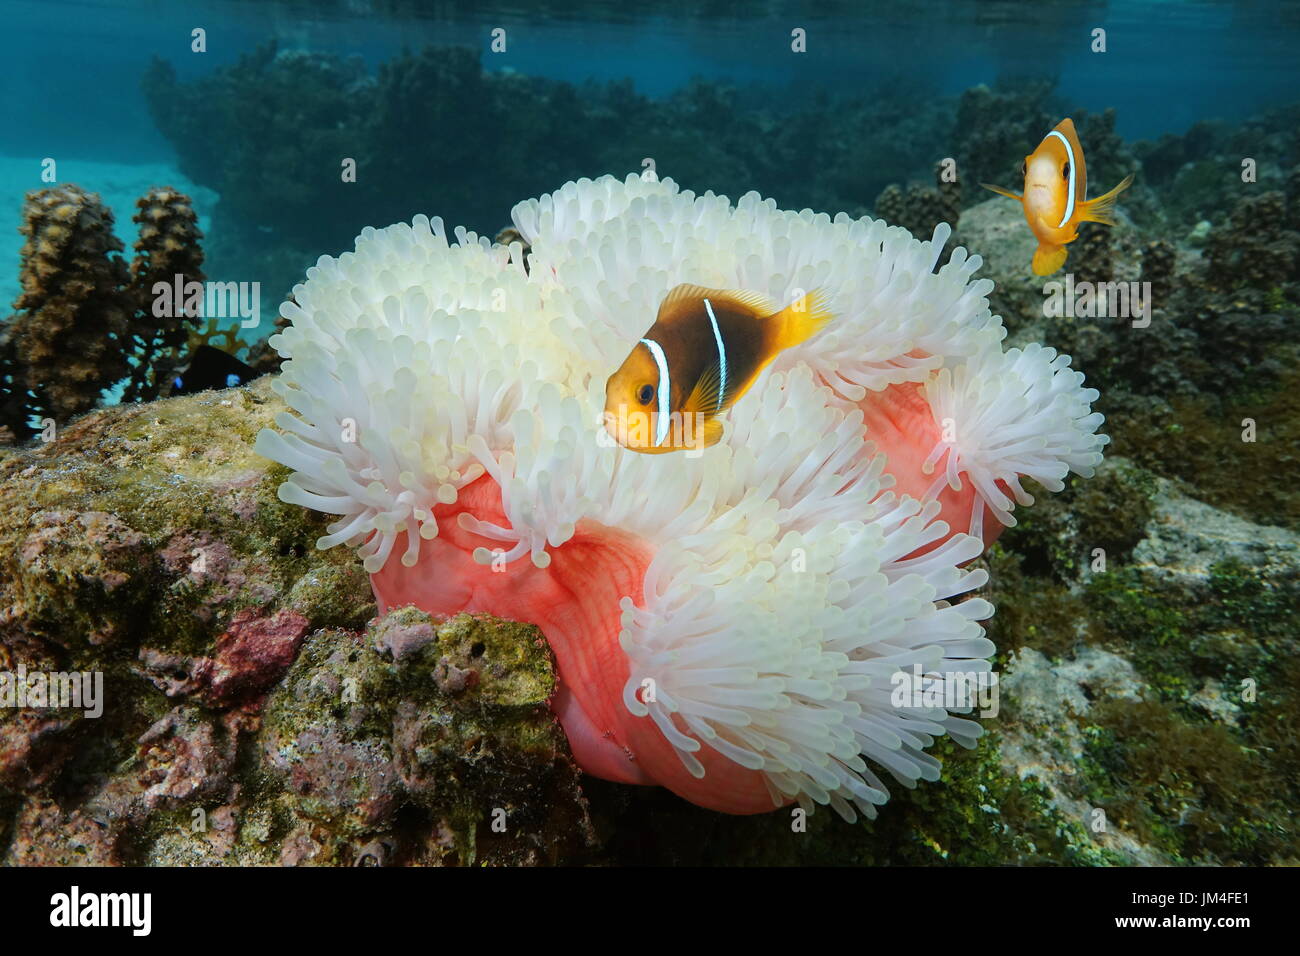 Seeanemone Heteractis Magnifica mit Fisch Orange-Fin Anemonenfische, Amphiprion Chrysopterus, Unterwasser in den Pazifischen Ozean, Moorea, Französisch-Polynesien Stockfoto